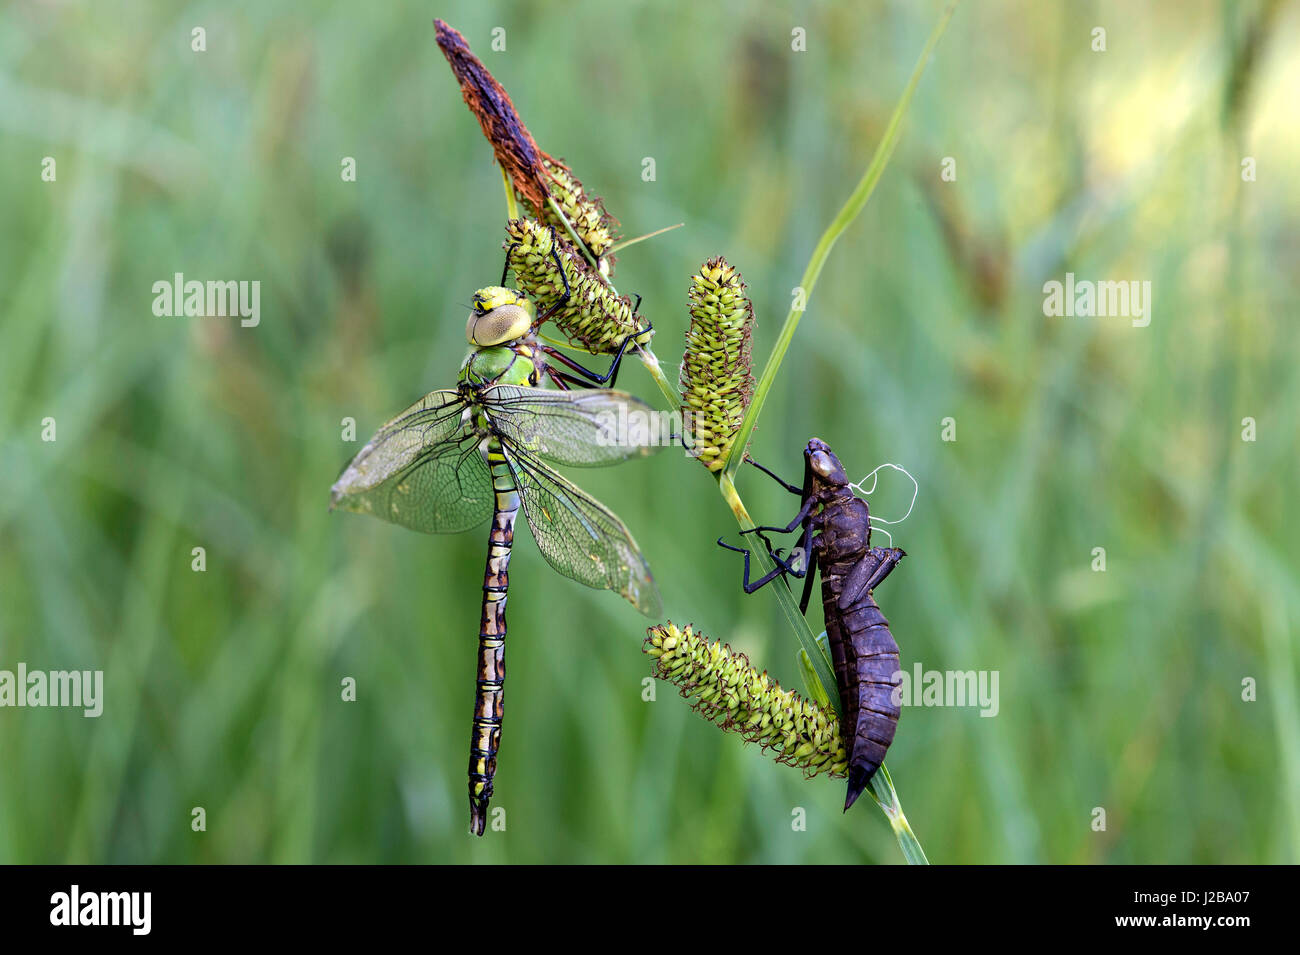 Appena tratteggiato imperatore maschio dragonfly (Anax imperator), venditori ambulanti (Famiglia Aeshnidae), Svizzera Foto Stock